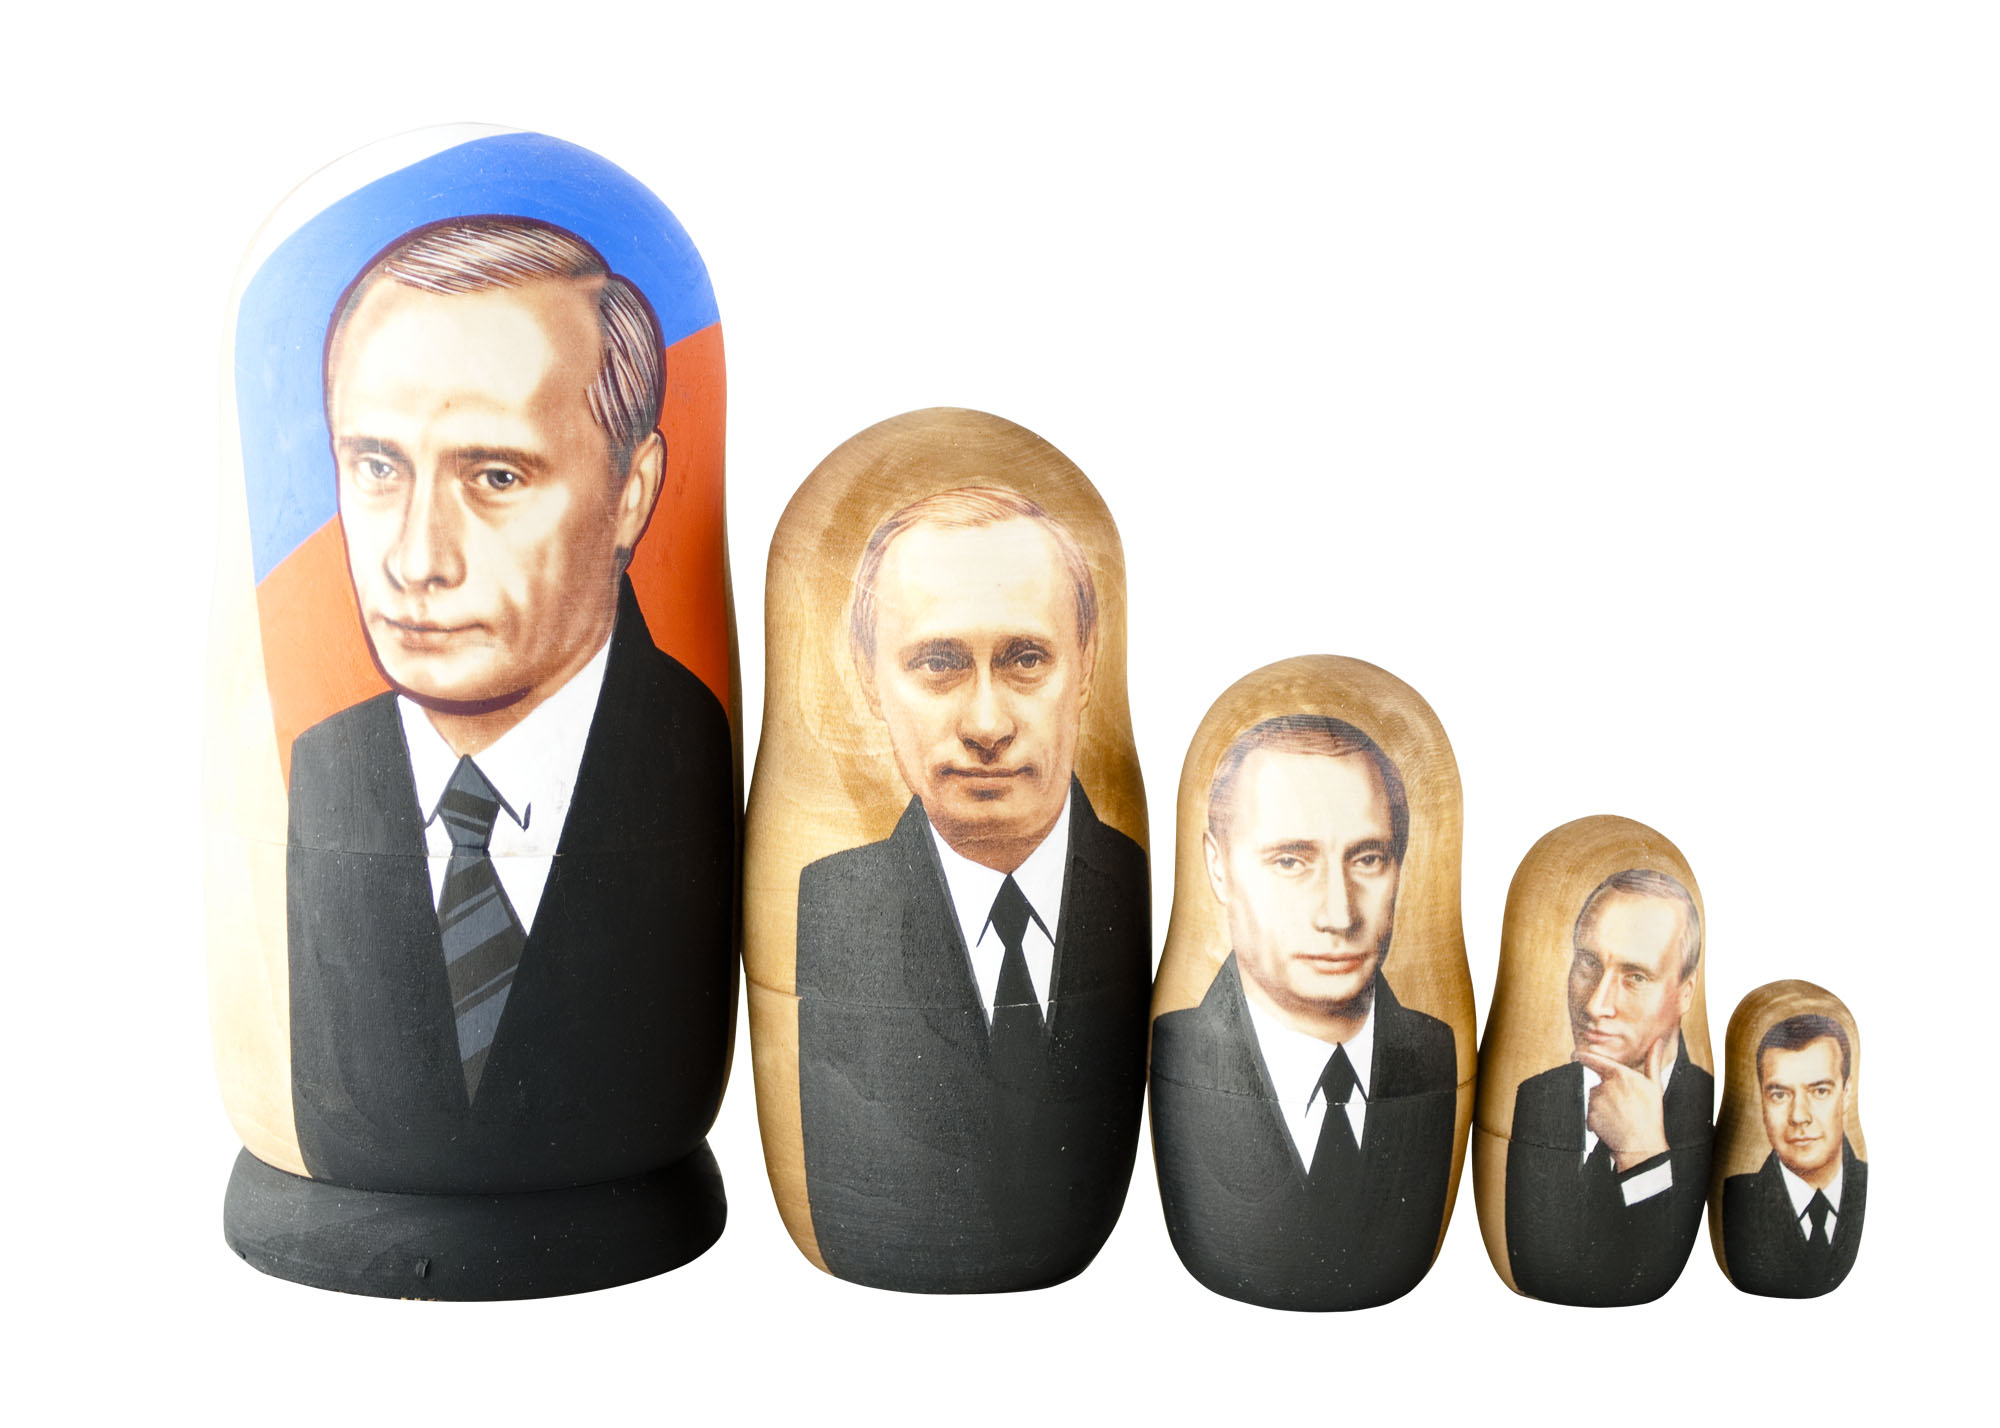 Buy Putin Putin Putin Medvedev Doll 5pc./6" at GoldenCockerel.com